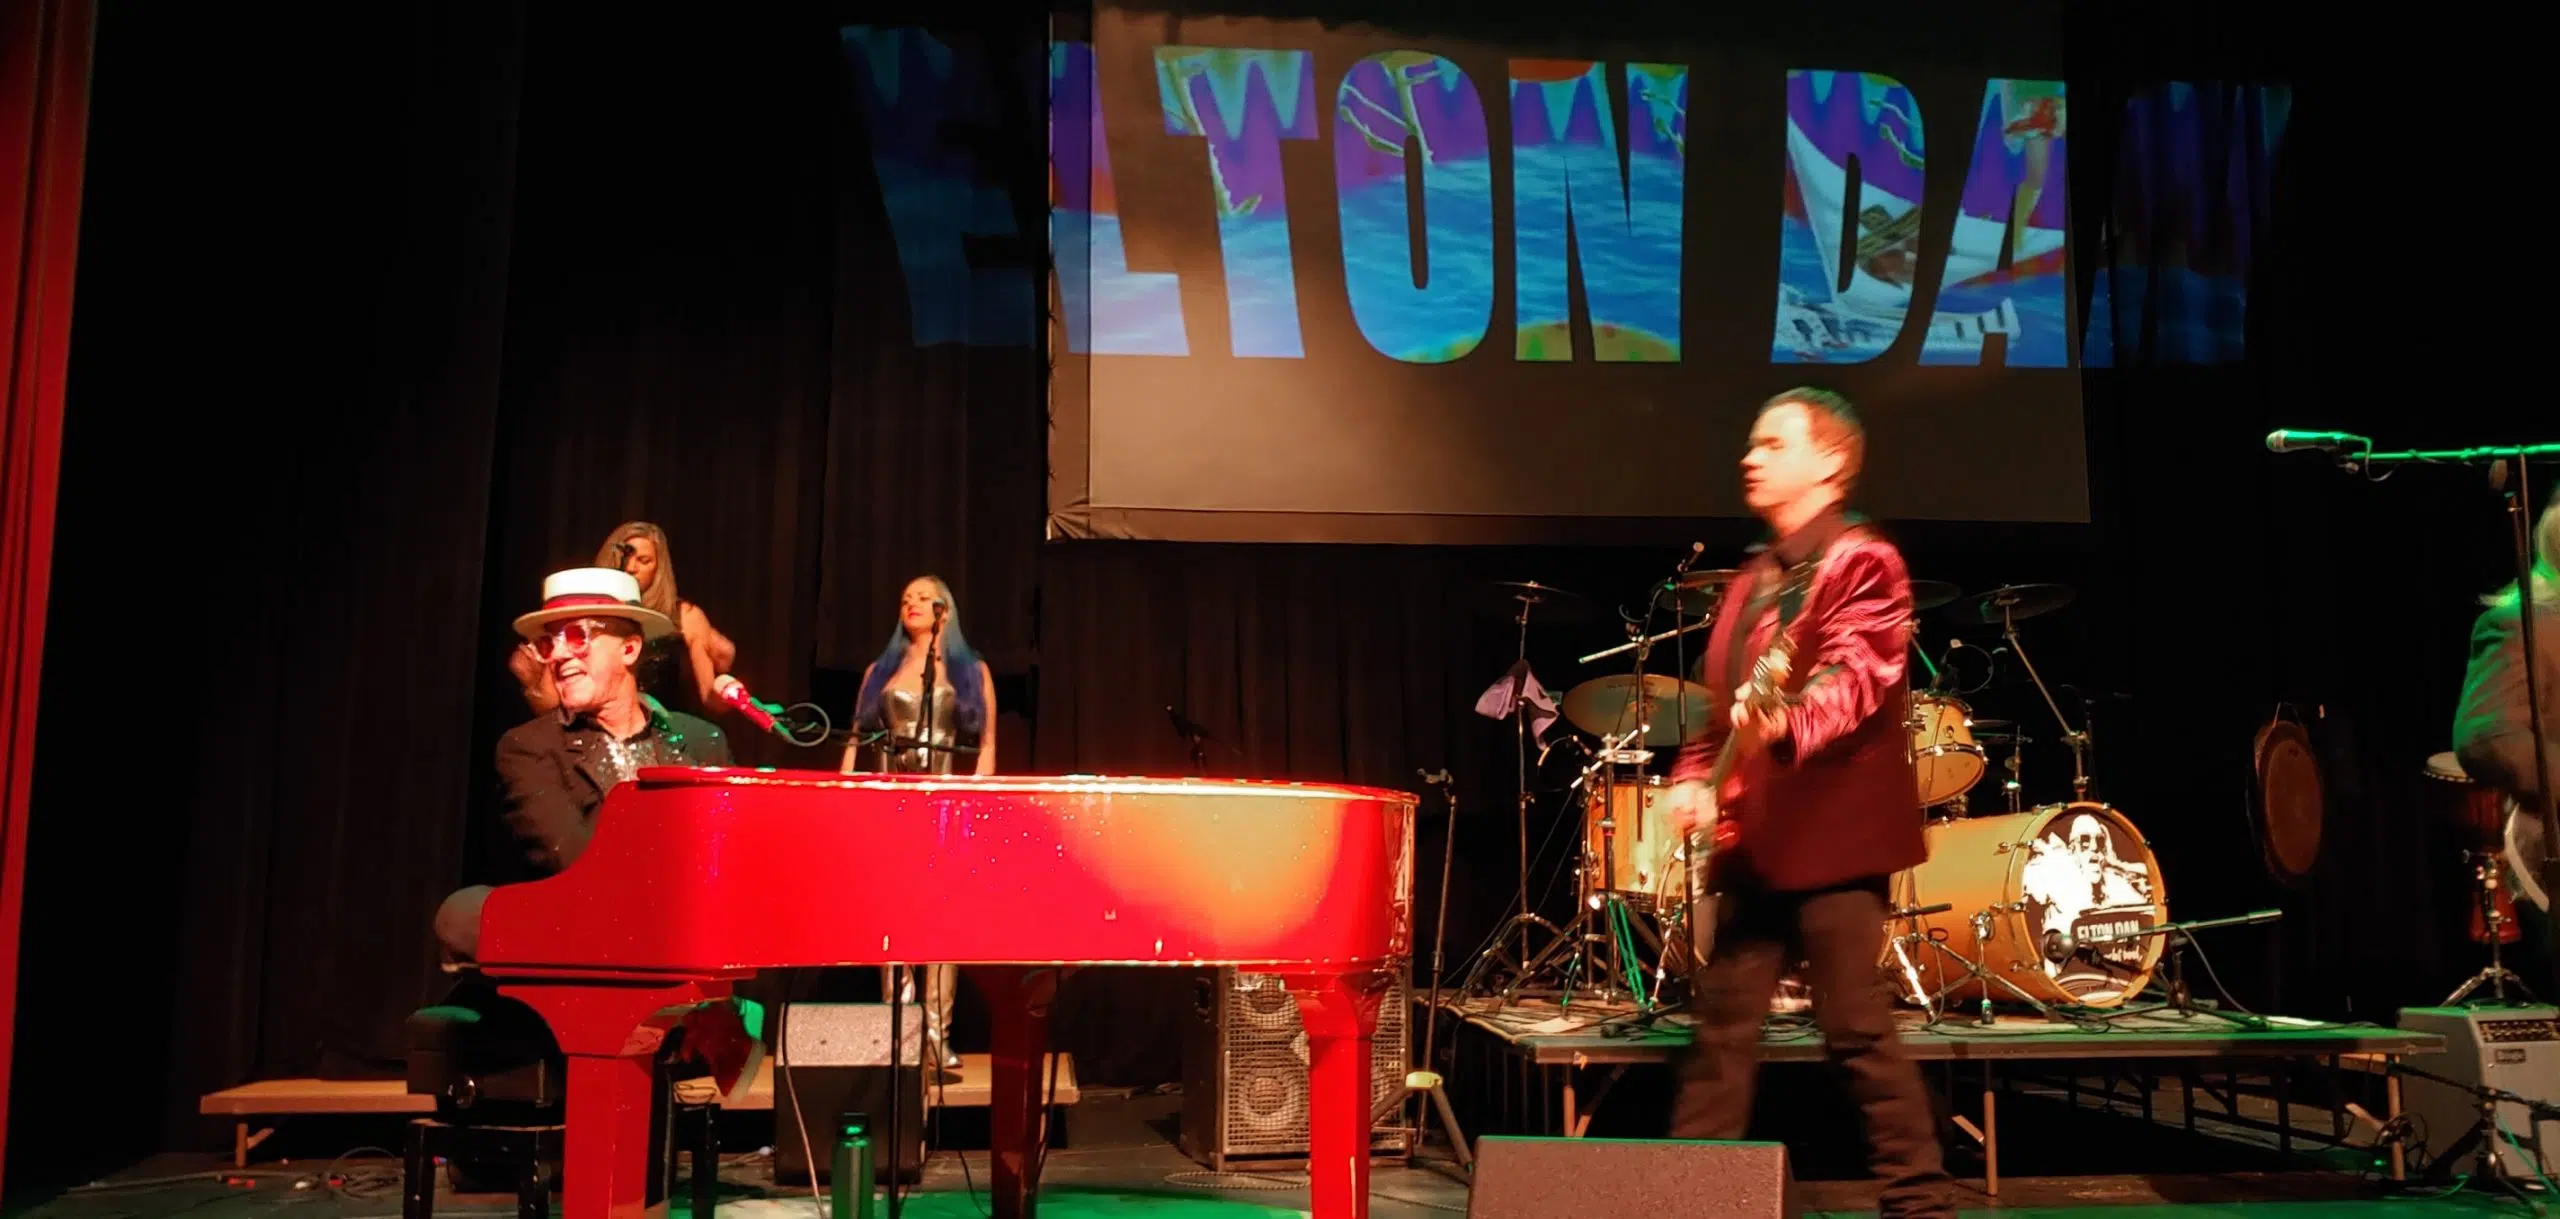 Latest Emporia Granada Theatre offering celebrates the music of Elton John Saturday